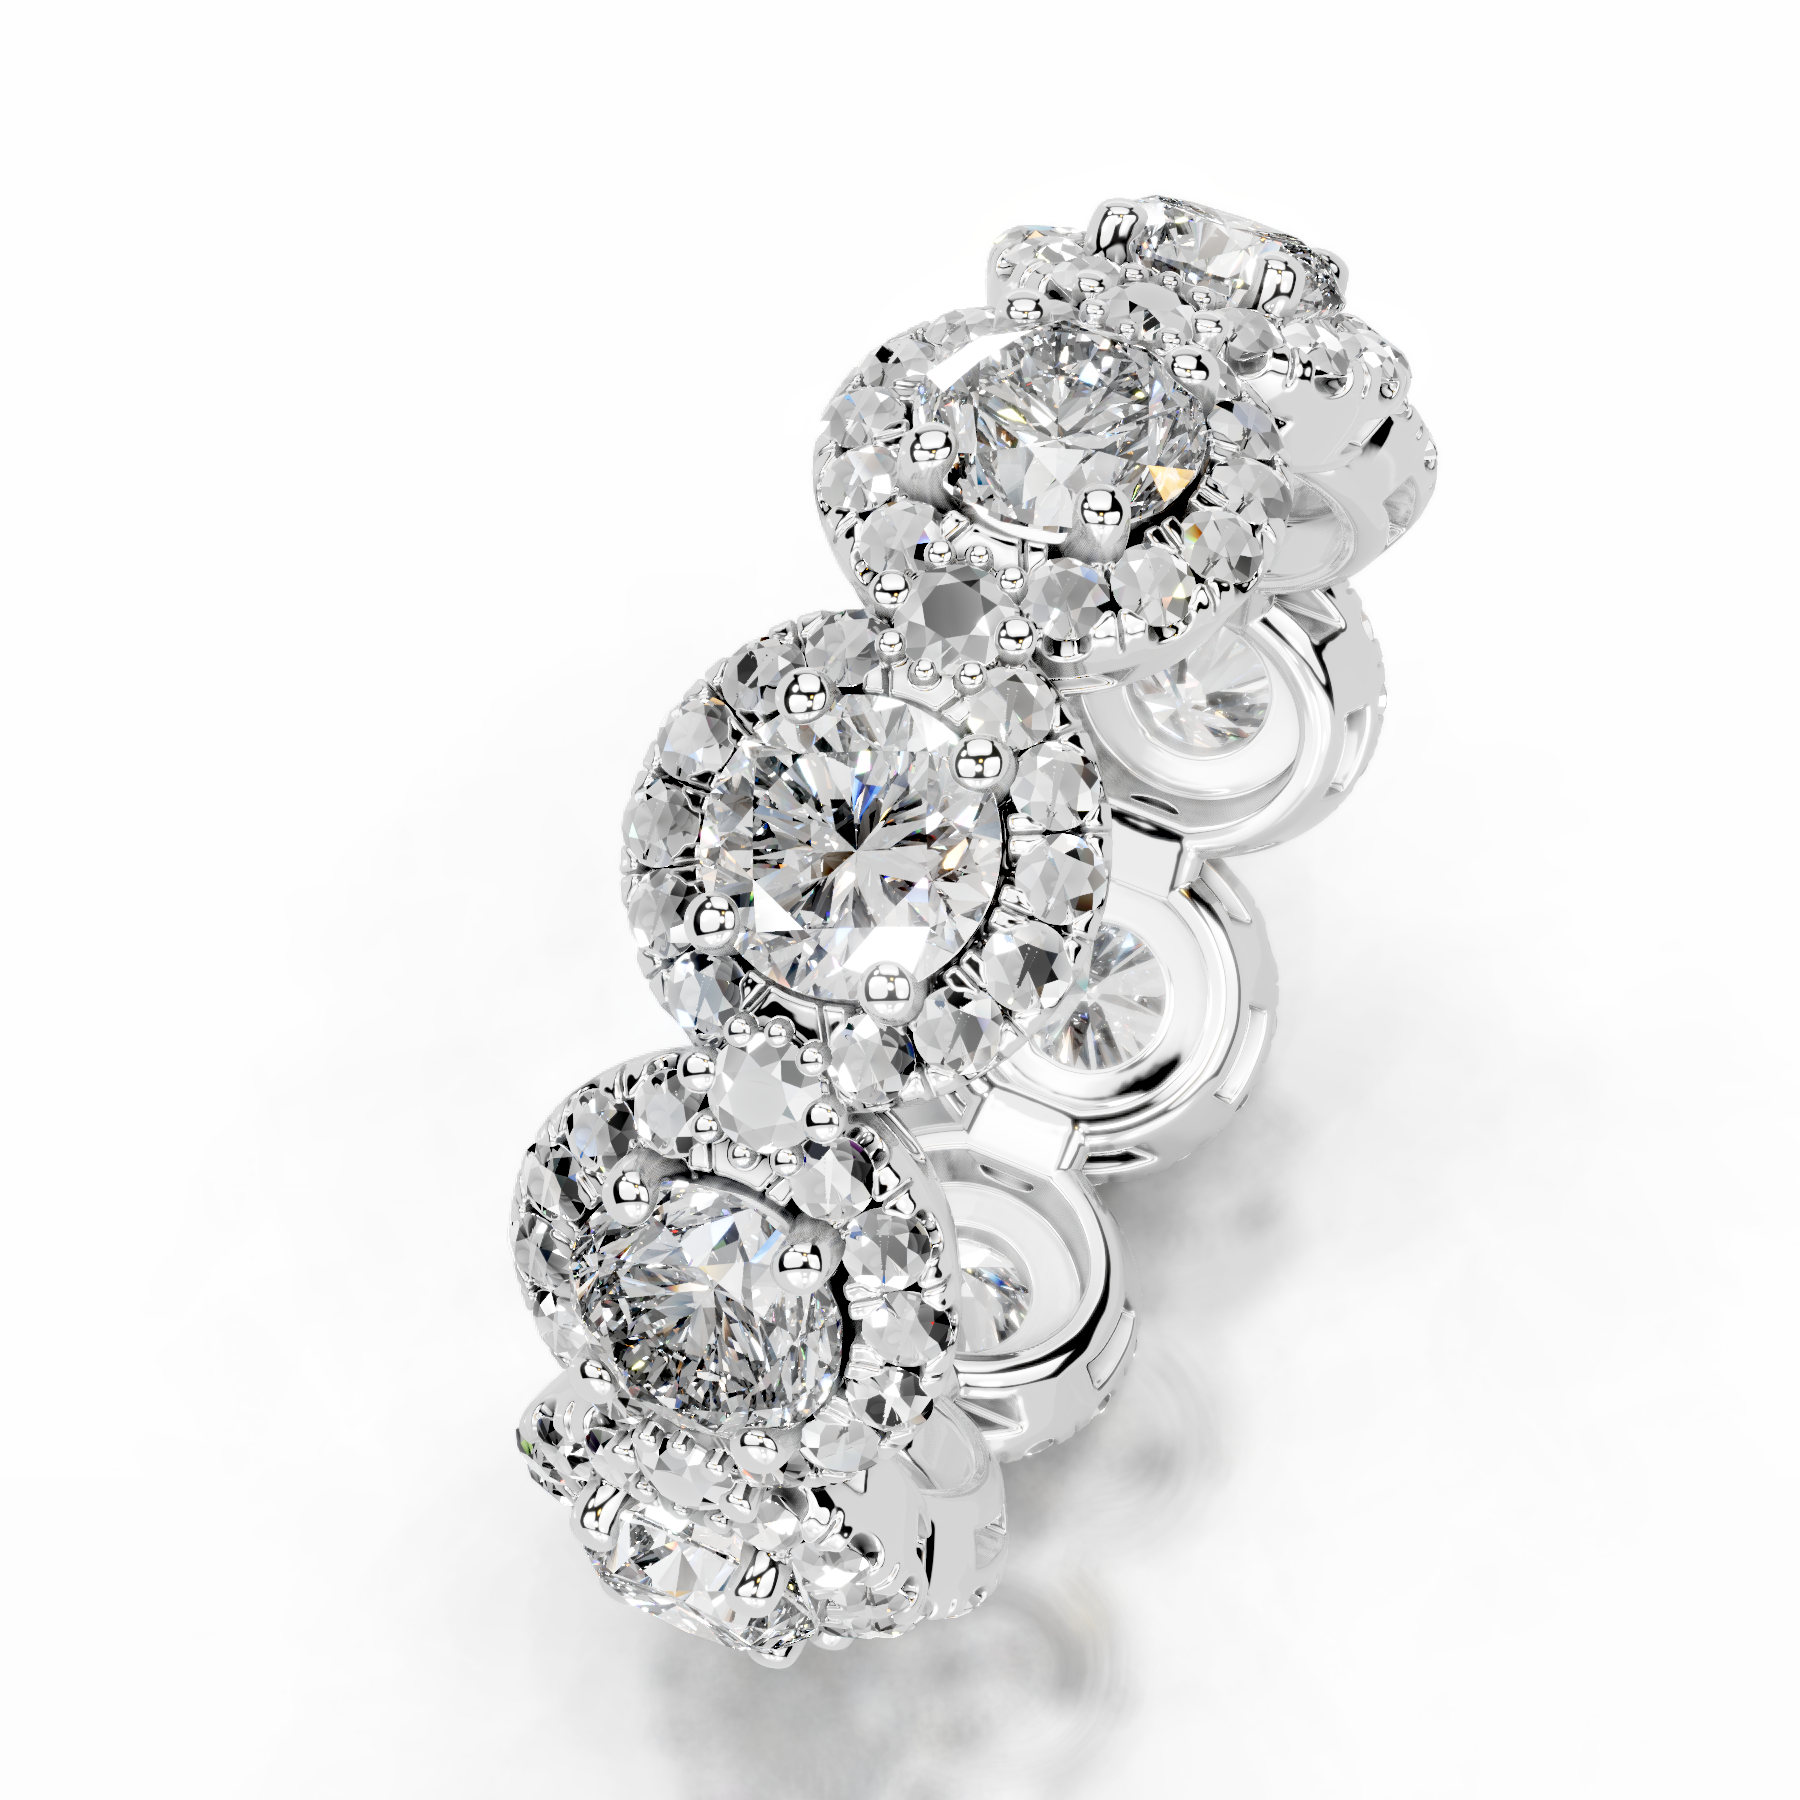 Londyn Diamond Halo Wedding Ring   (3.20 Carat) -14K White Gold